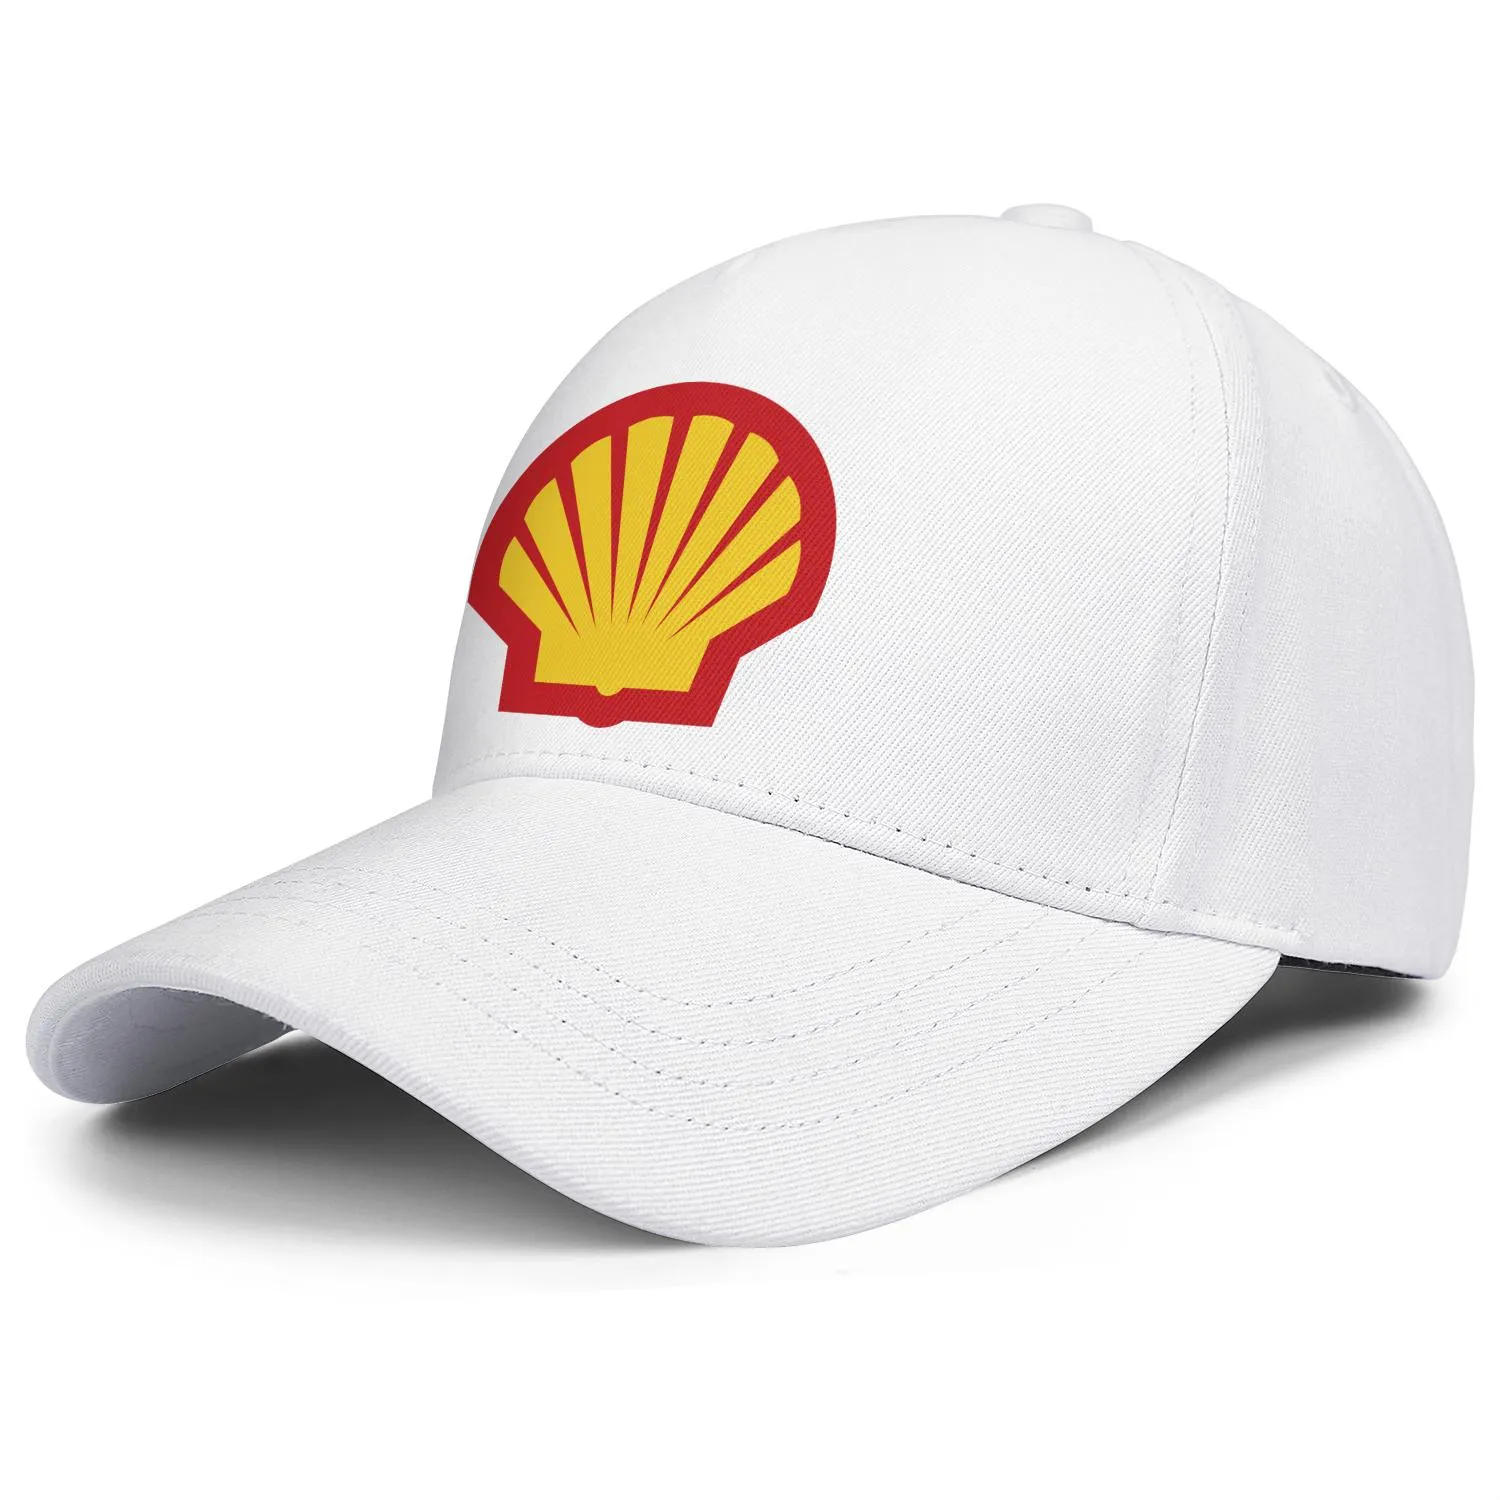 Logo de la station-service à essence Shell pour hommes et femmes casquette de camionneur réglable équipée vintage mignon baseballhats localisateur d'essence symbo301e